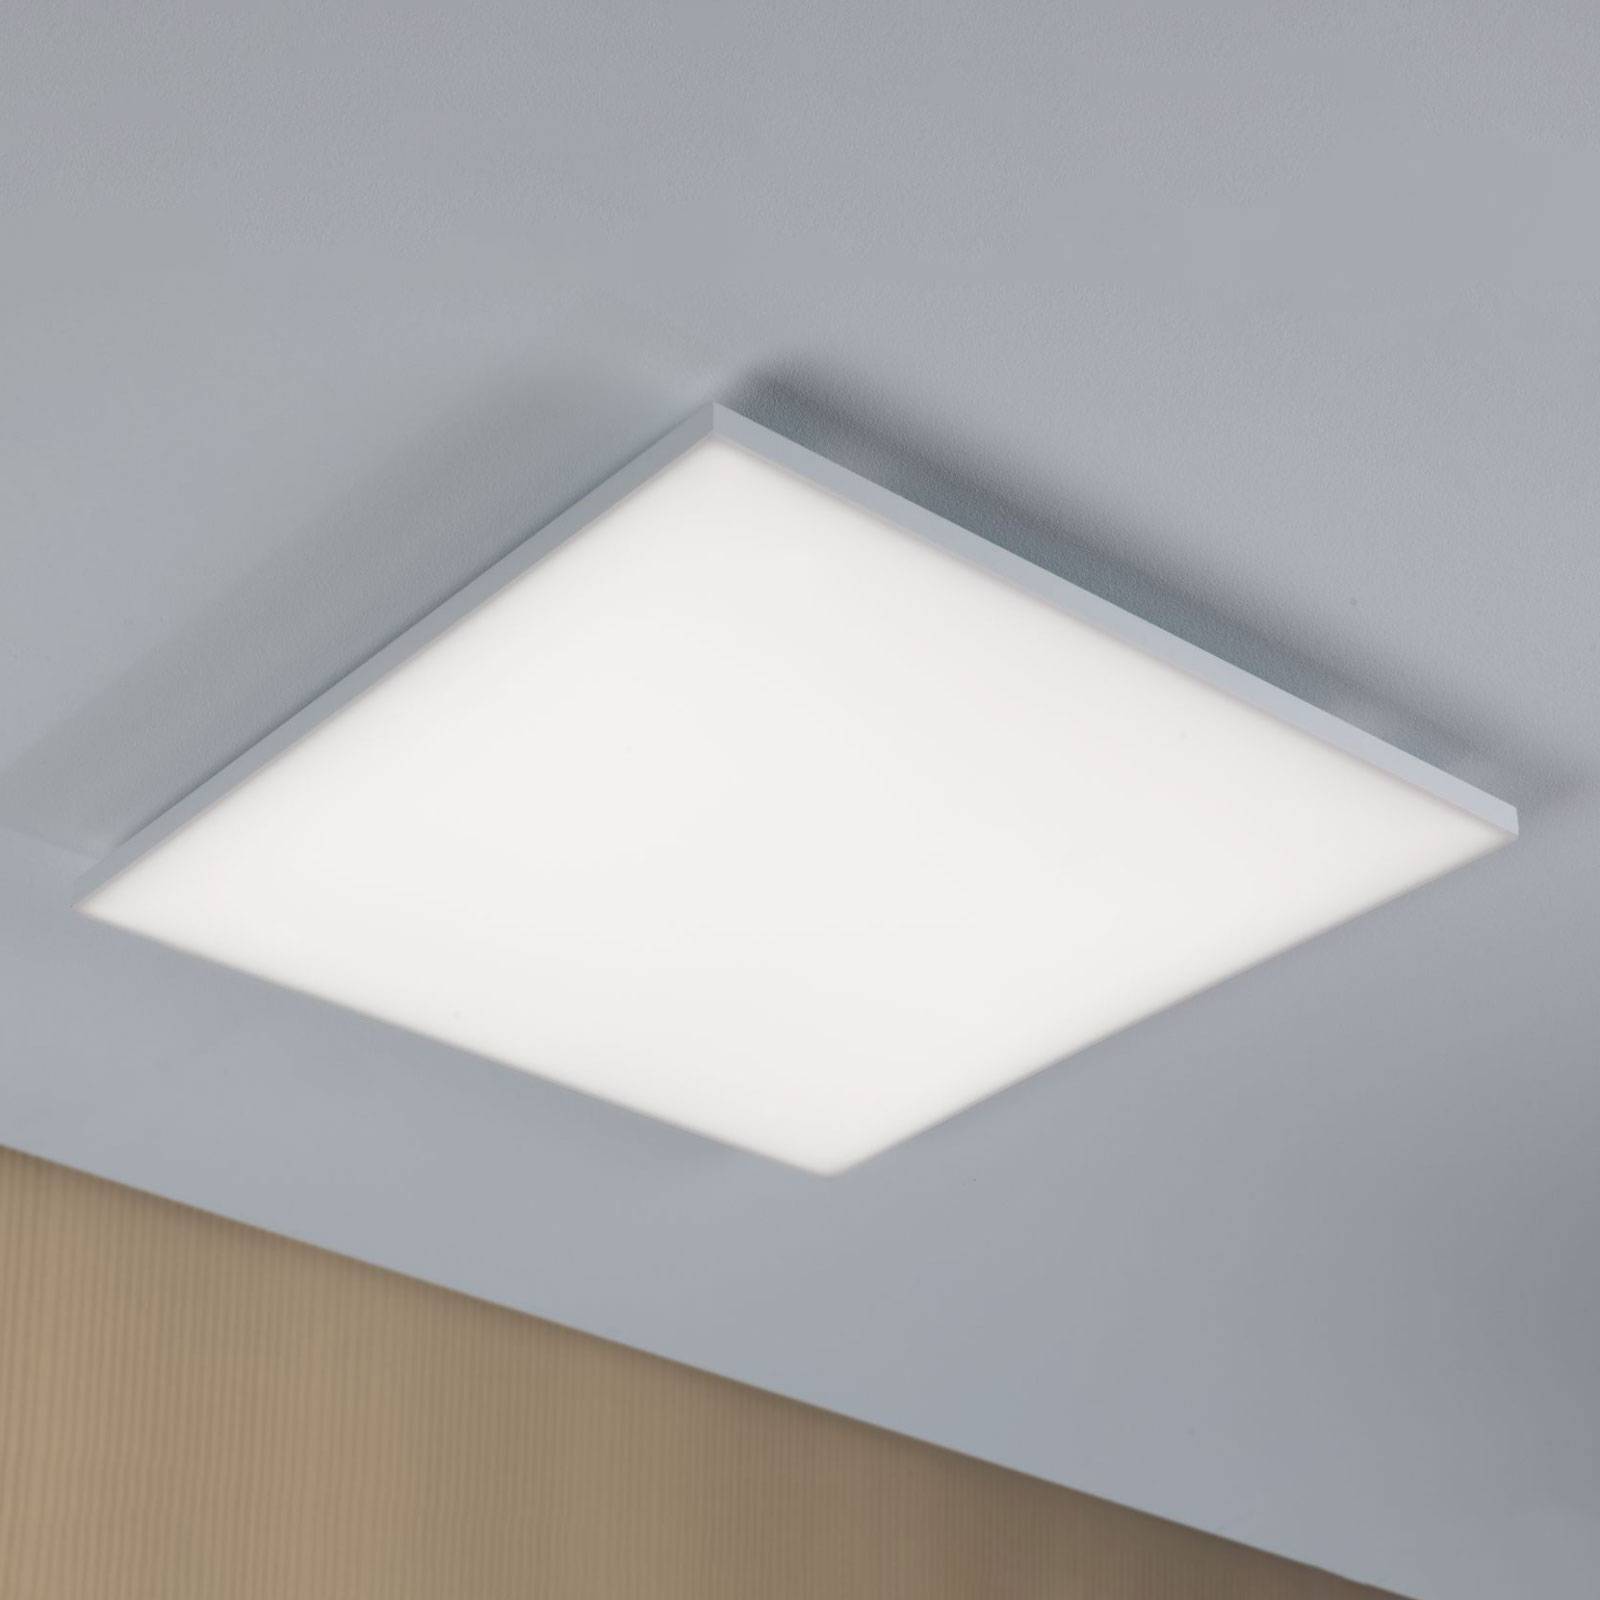 Paulmann Velora LED ceiling light 59.5 x 59.5 cm